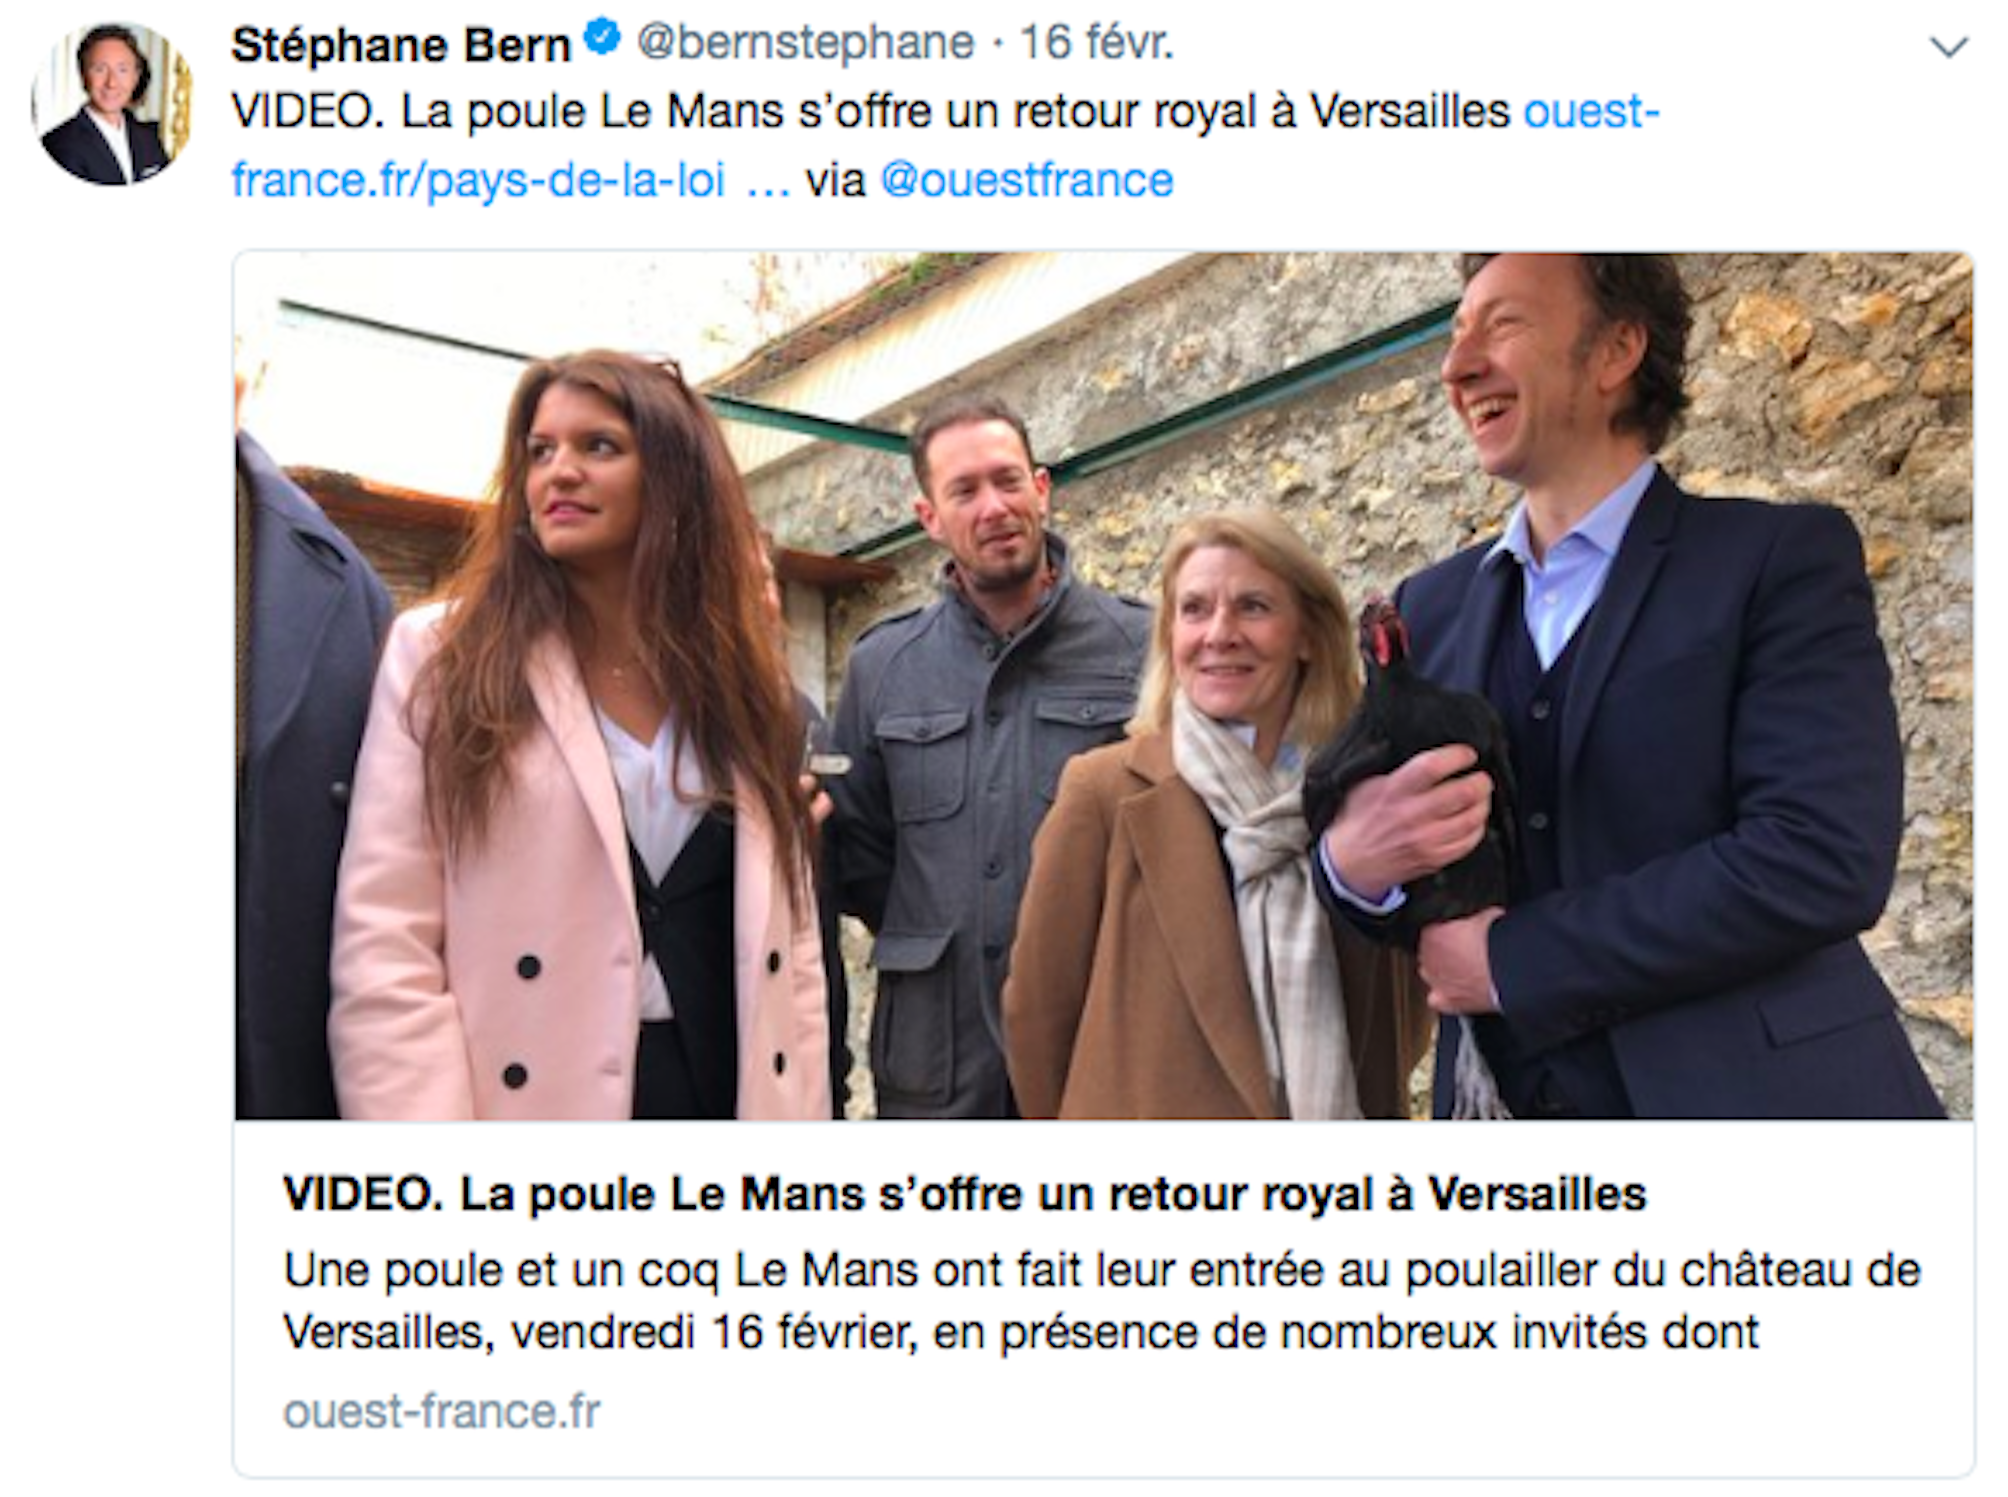 Tweet de Stéphane Bern le 16 février sur le retour de la poule Le Mans à Versailles